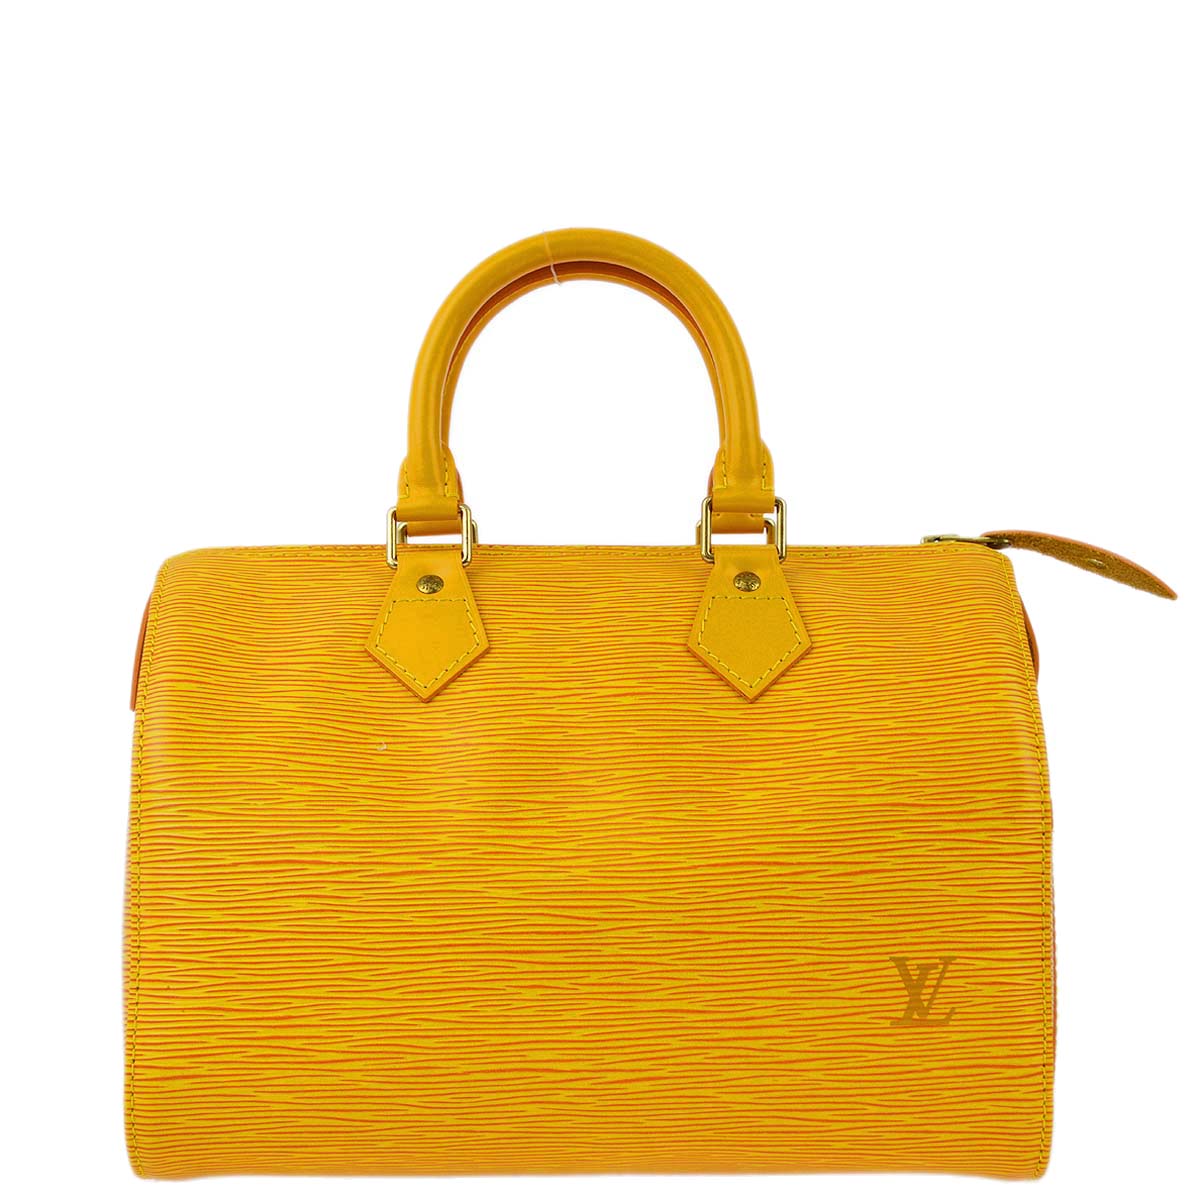 Louis Vuitton 1996 黃色 Epi Speedy 25 手提包 M43019